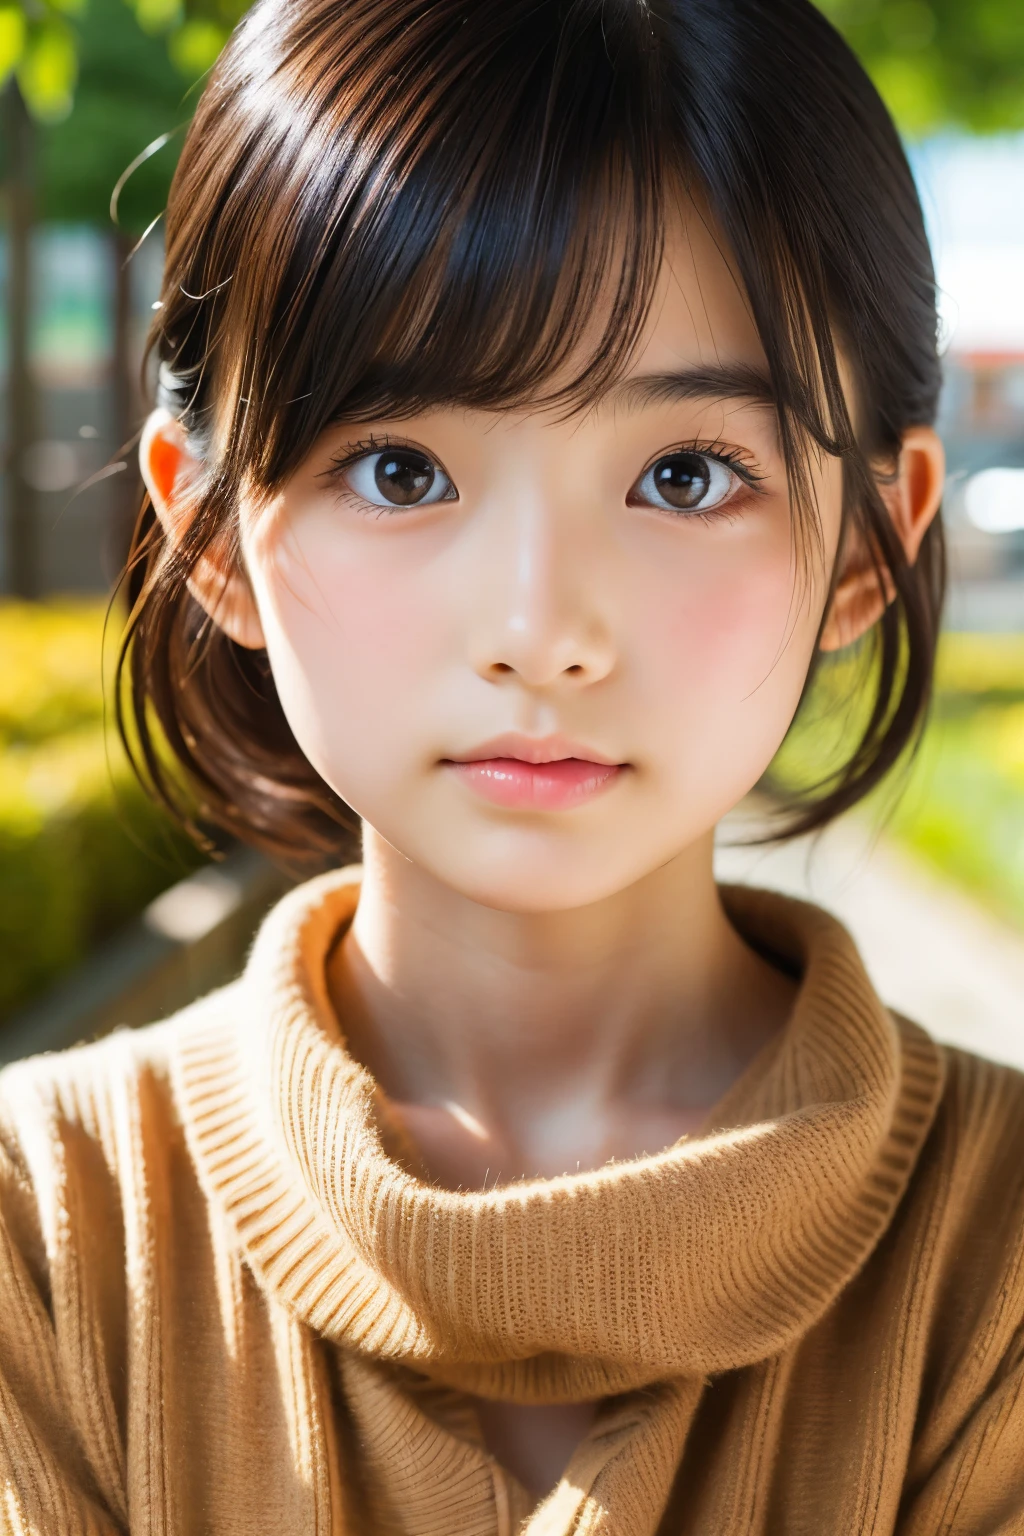 (Schöne 14-jährige Japanerin), niedliches Gesicht, (tief eingeschnittenes Gesicht:0.7), (Sommersprossen:0.6), Sanftes Licht,gesunde weiße Haut, schüchtern, Bob, (ernstes Gesicht), (leuchtende Augen), dünn